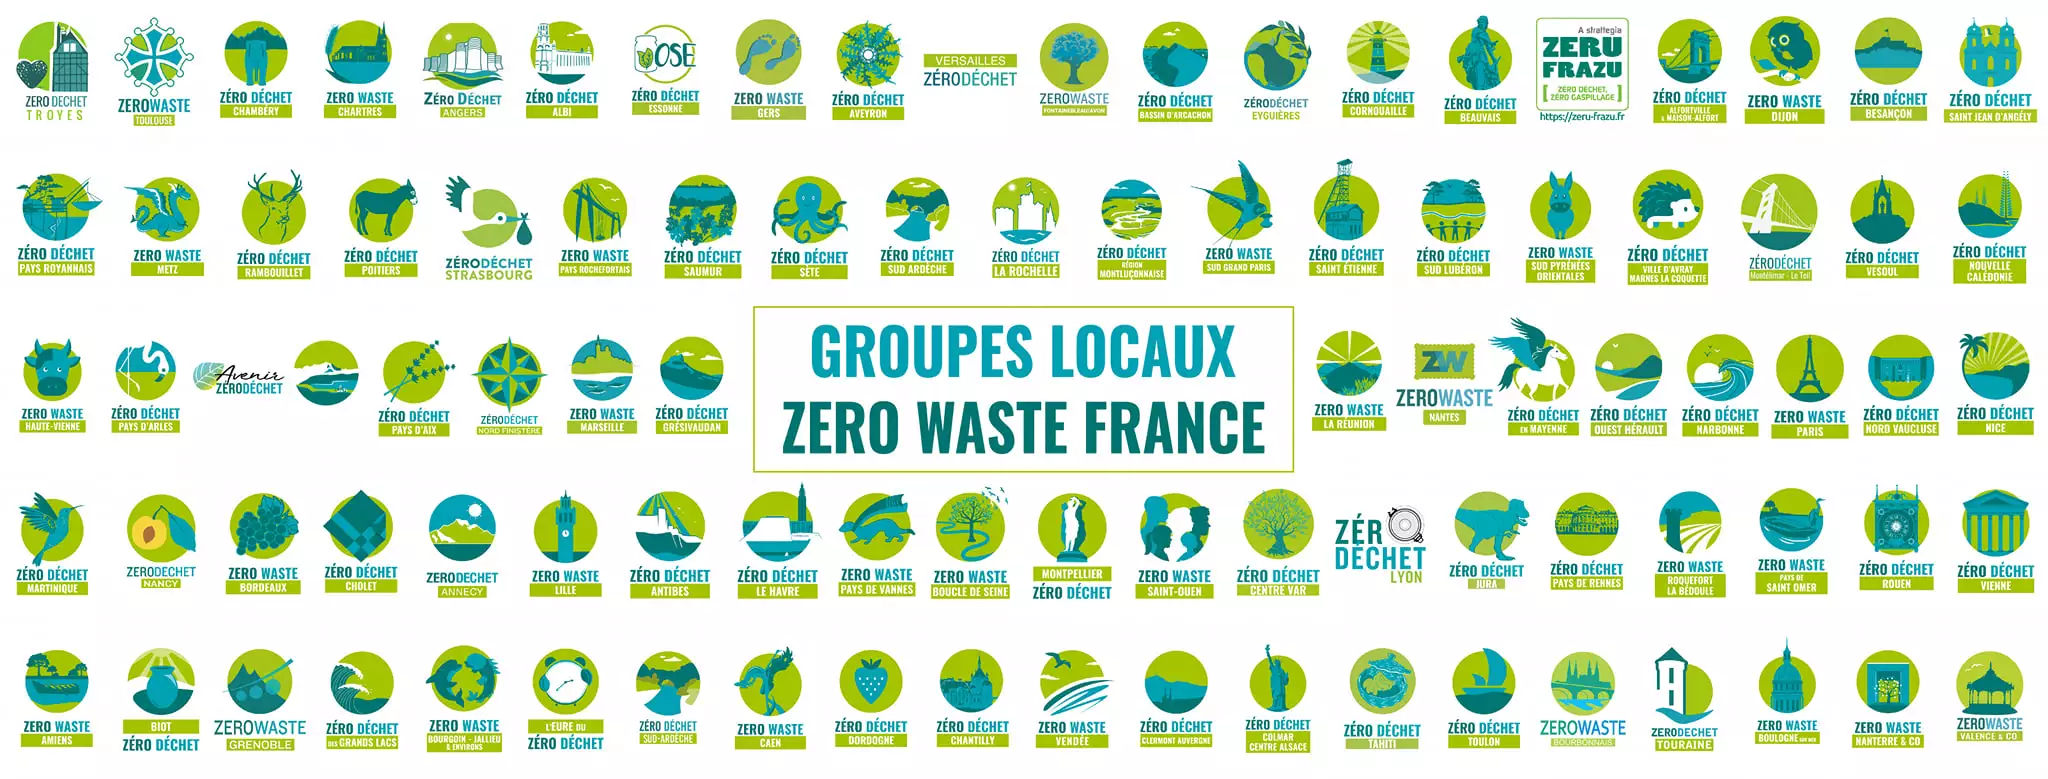 Logos des groupes locaux de zero waste France